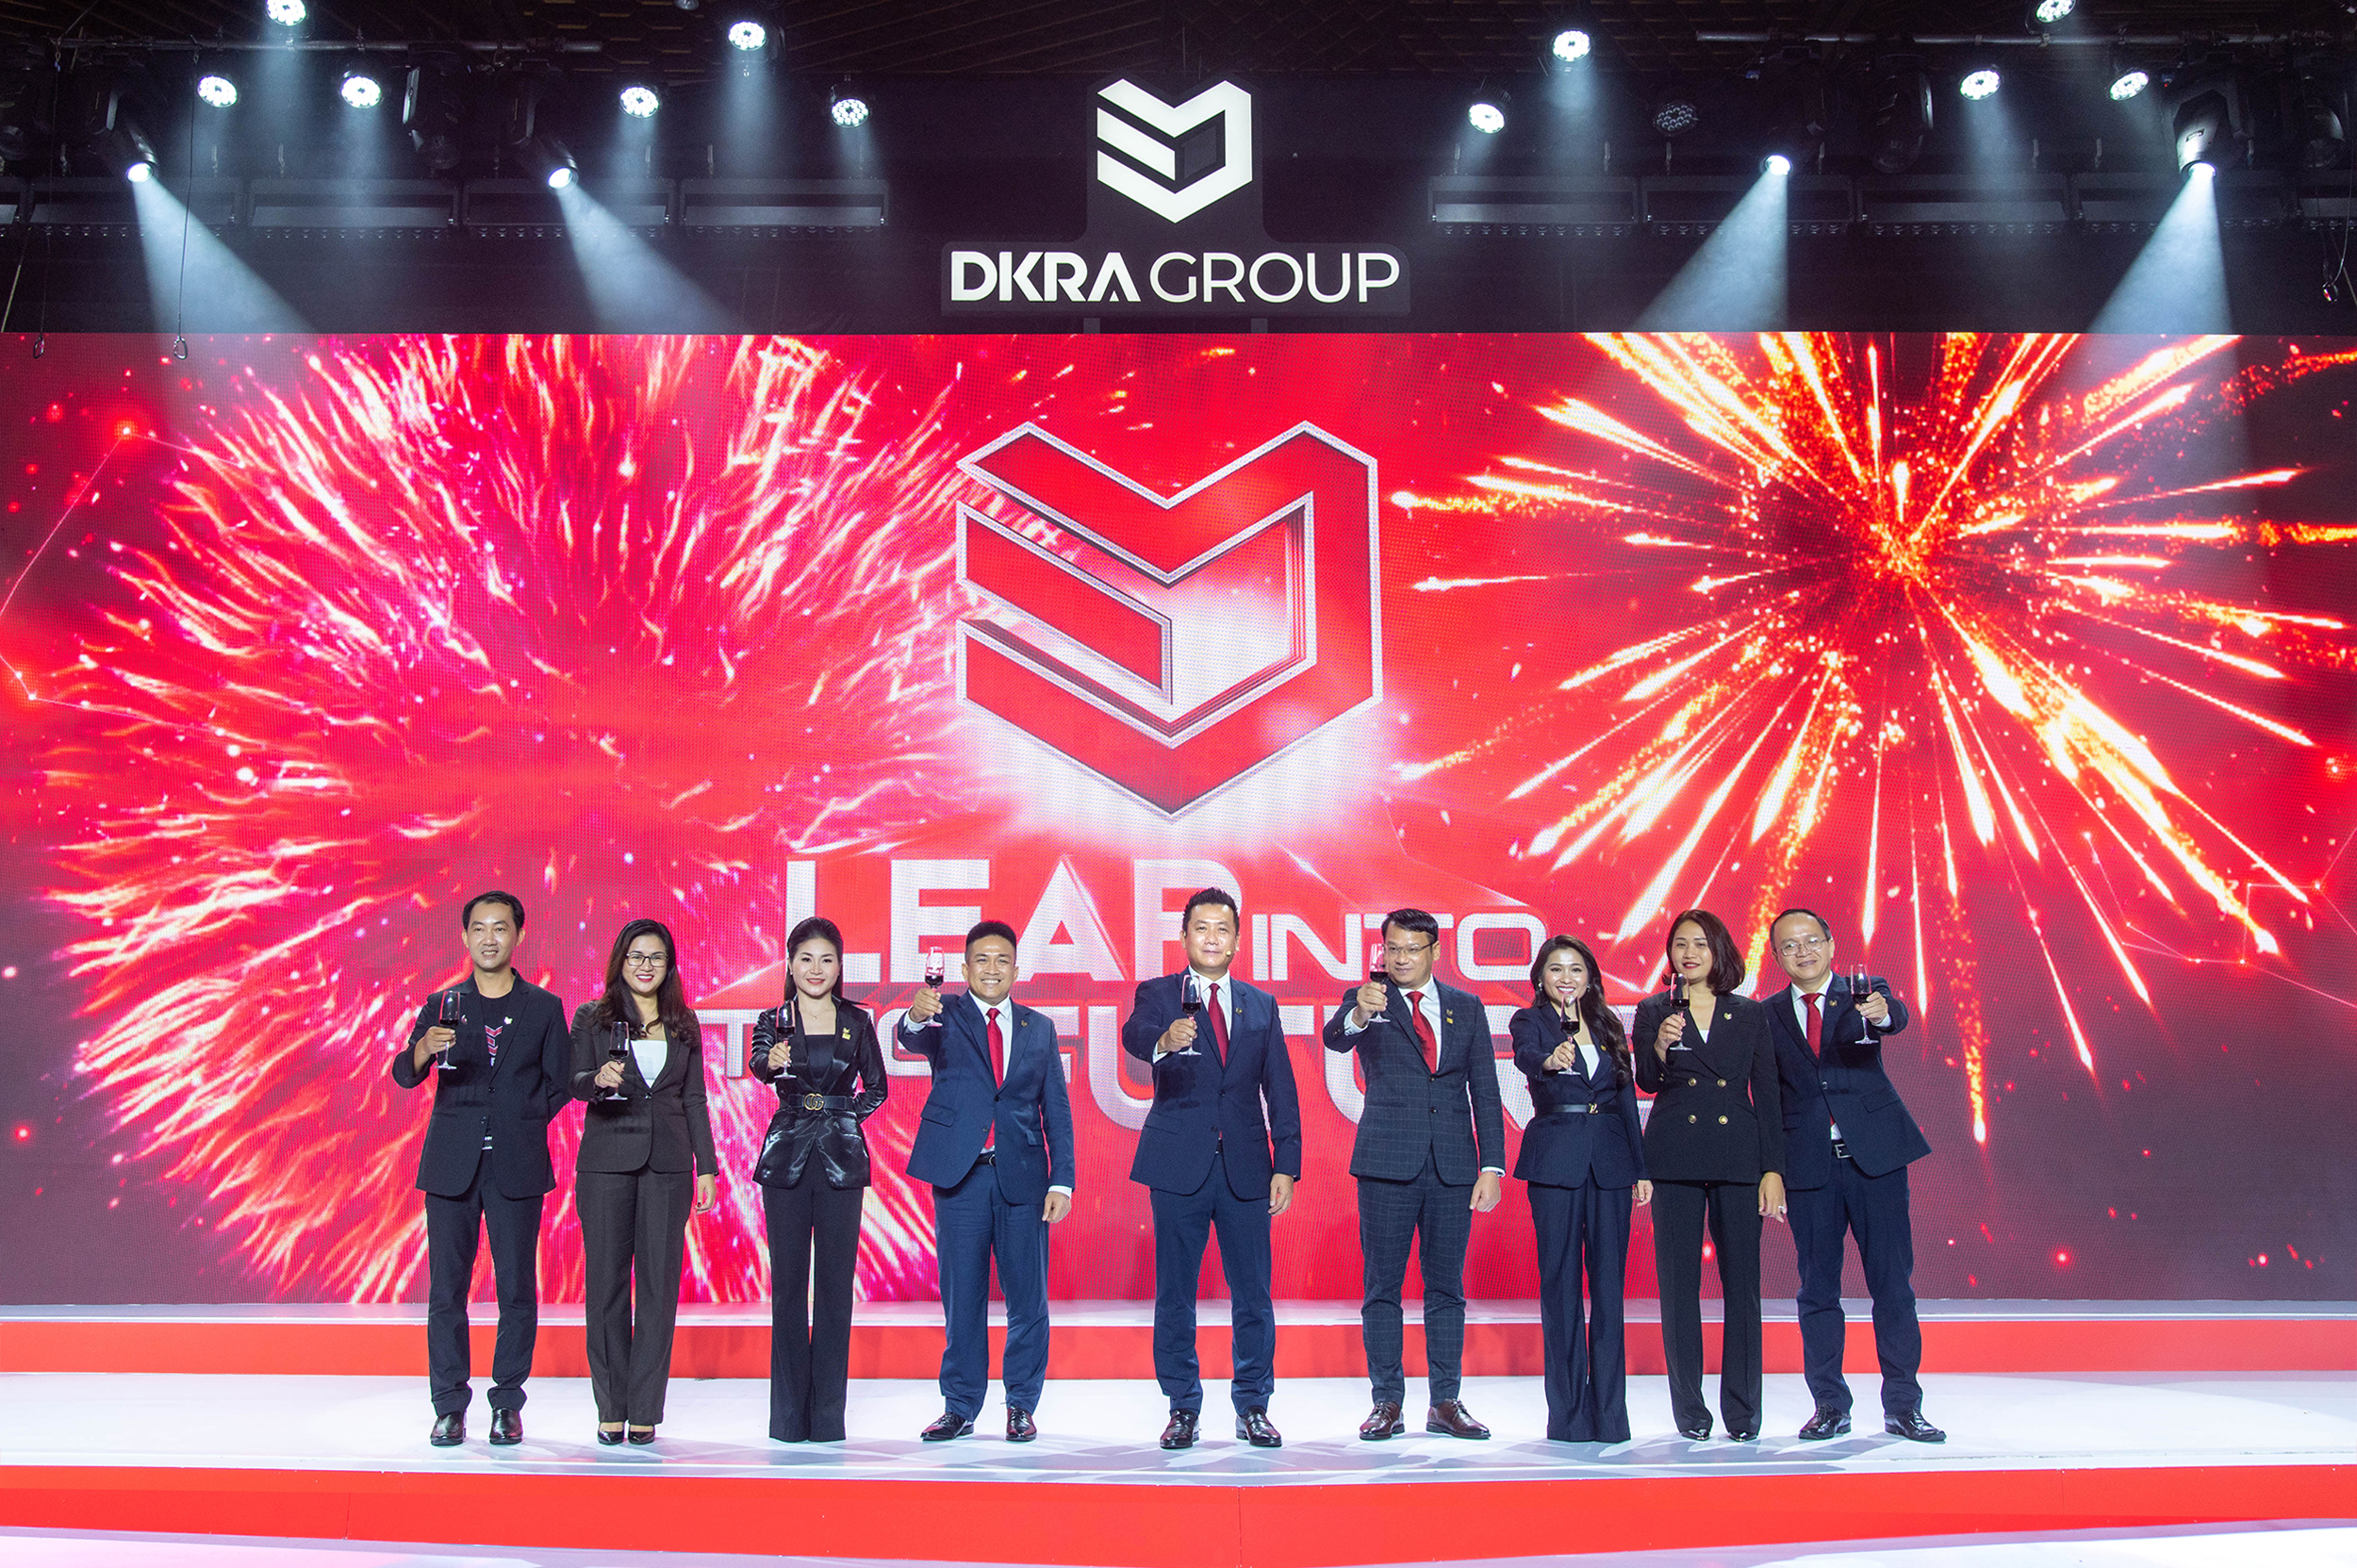 Đến năm 2030, DKRA Group đặc mục tiêu đạt doanh thu 20.000 tỷ đồng